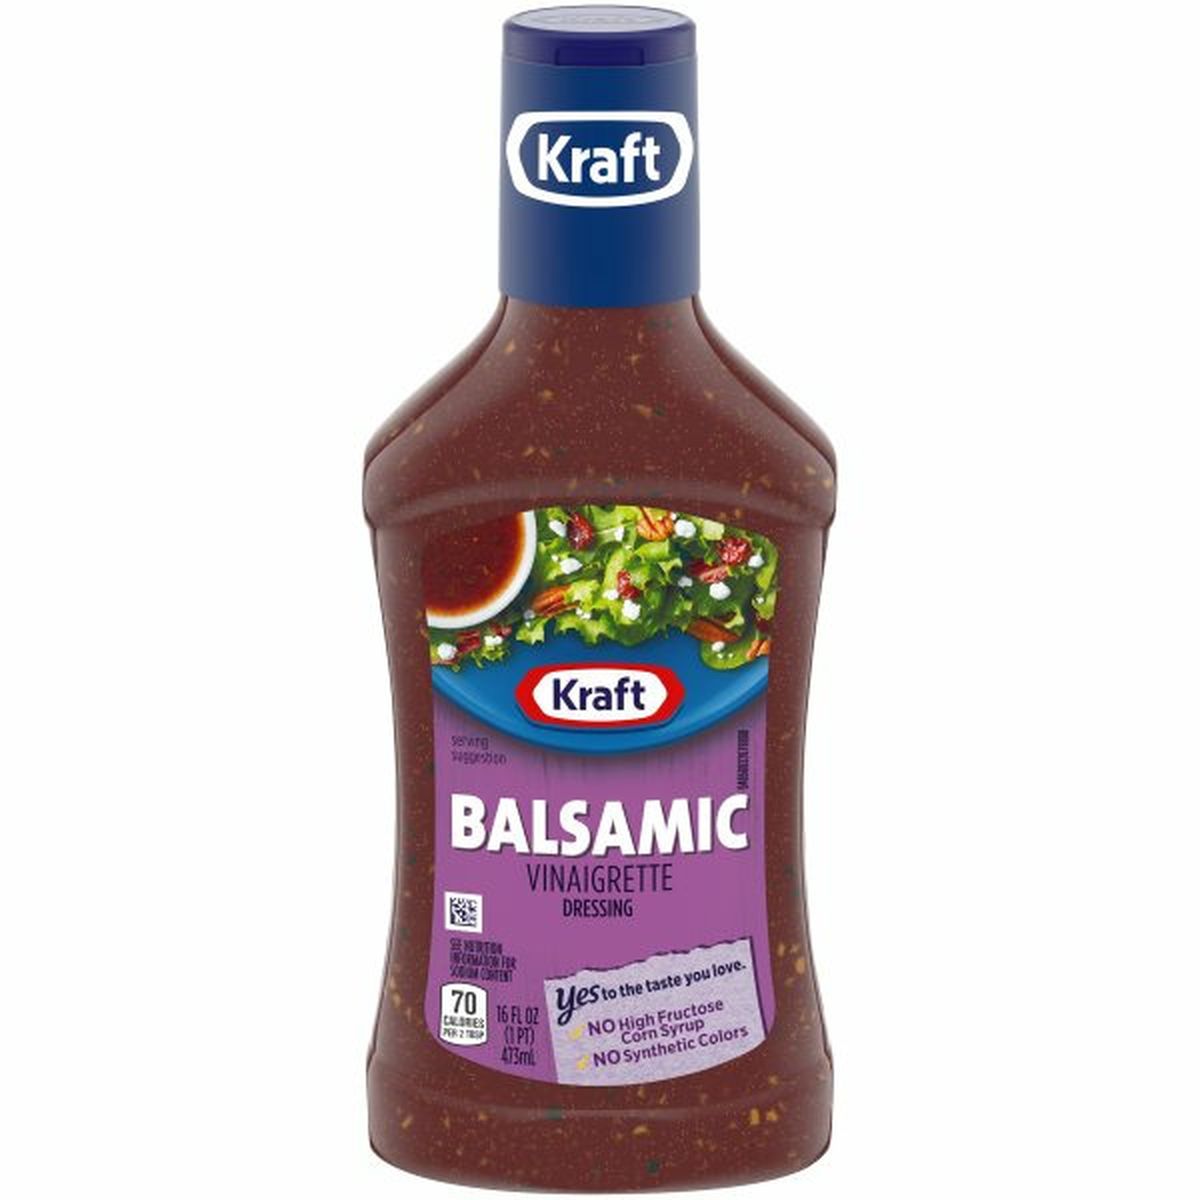 Calories in Kraft Balsamic Vinaigrette Dressing